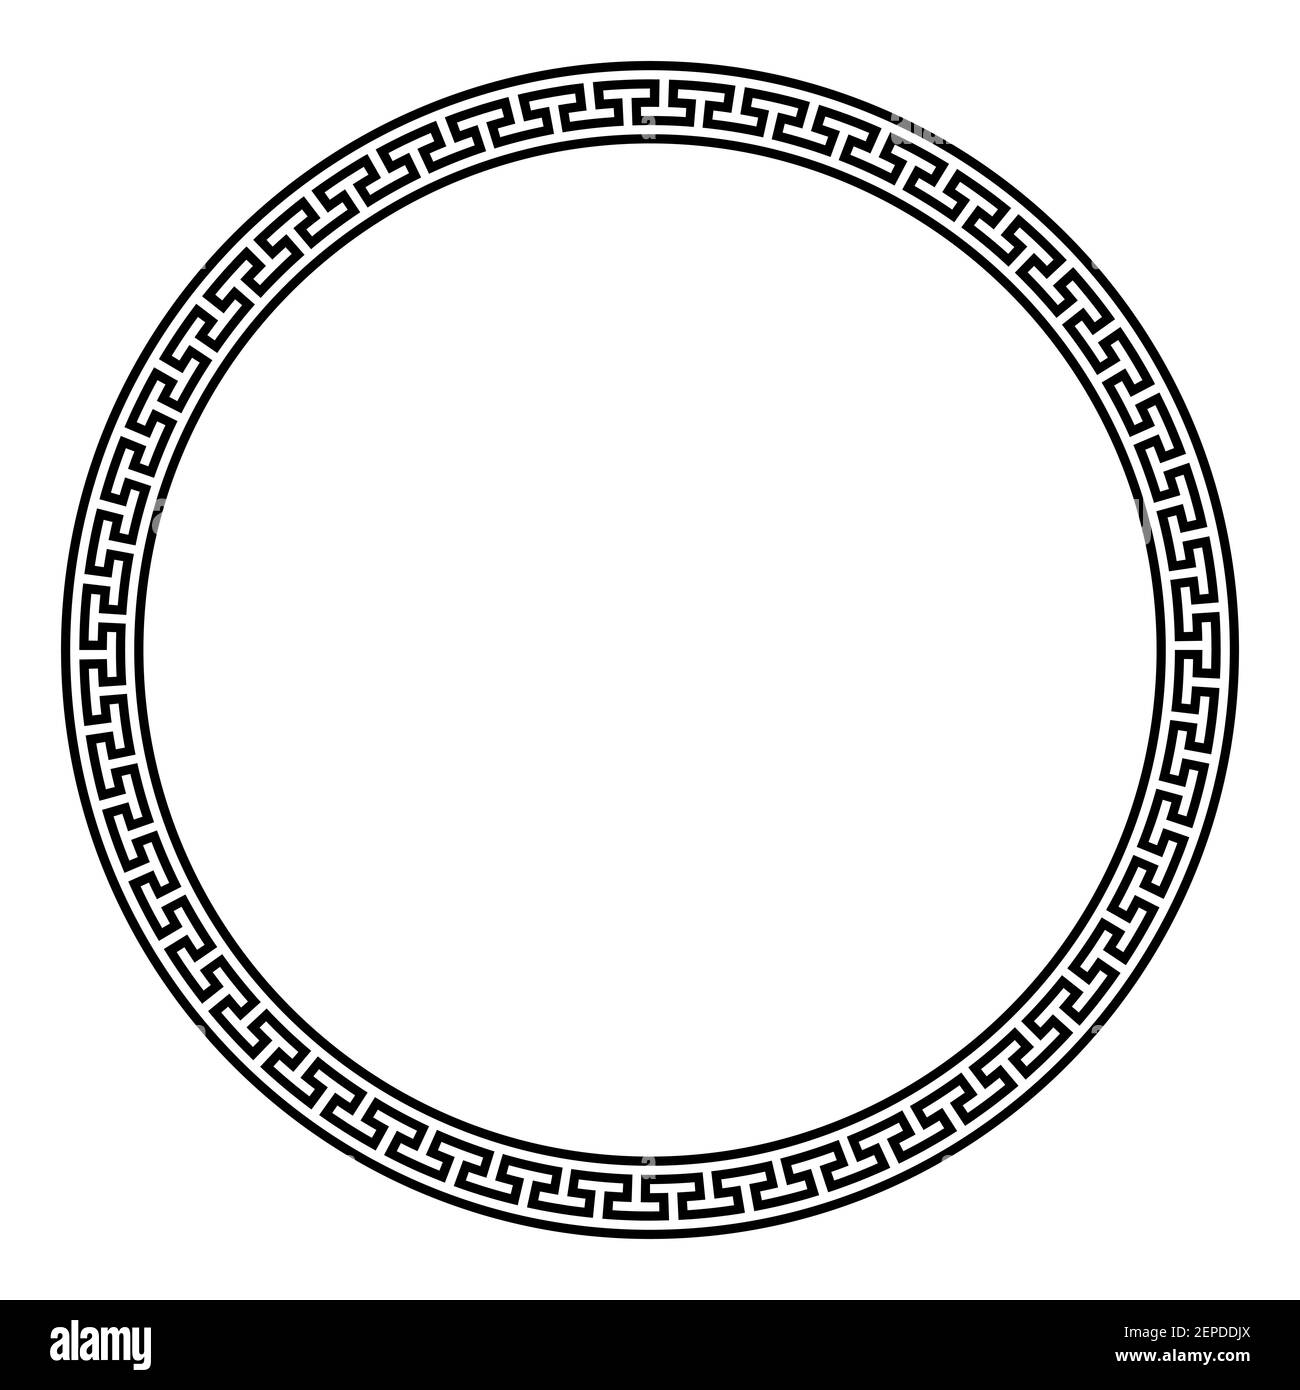 Großer Kreisrahmen mit einfachem Mäander-Muster. Dekorative Bordüre aus durchgehenden Linien, geformt zu einem nahtlosen Motiv. Griechisches Schlüsselmuster. Stockfoto